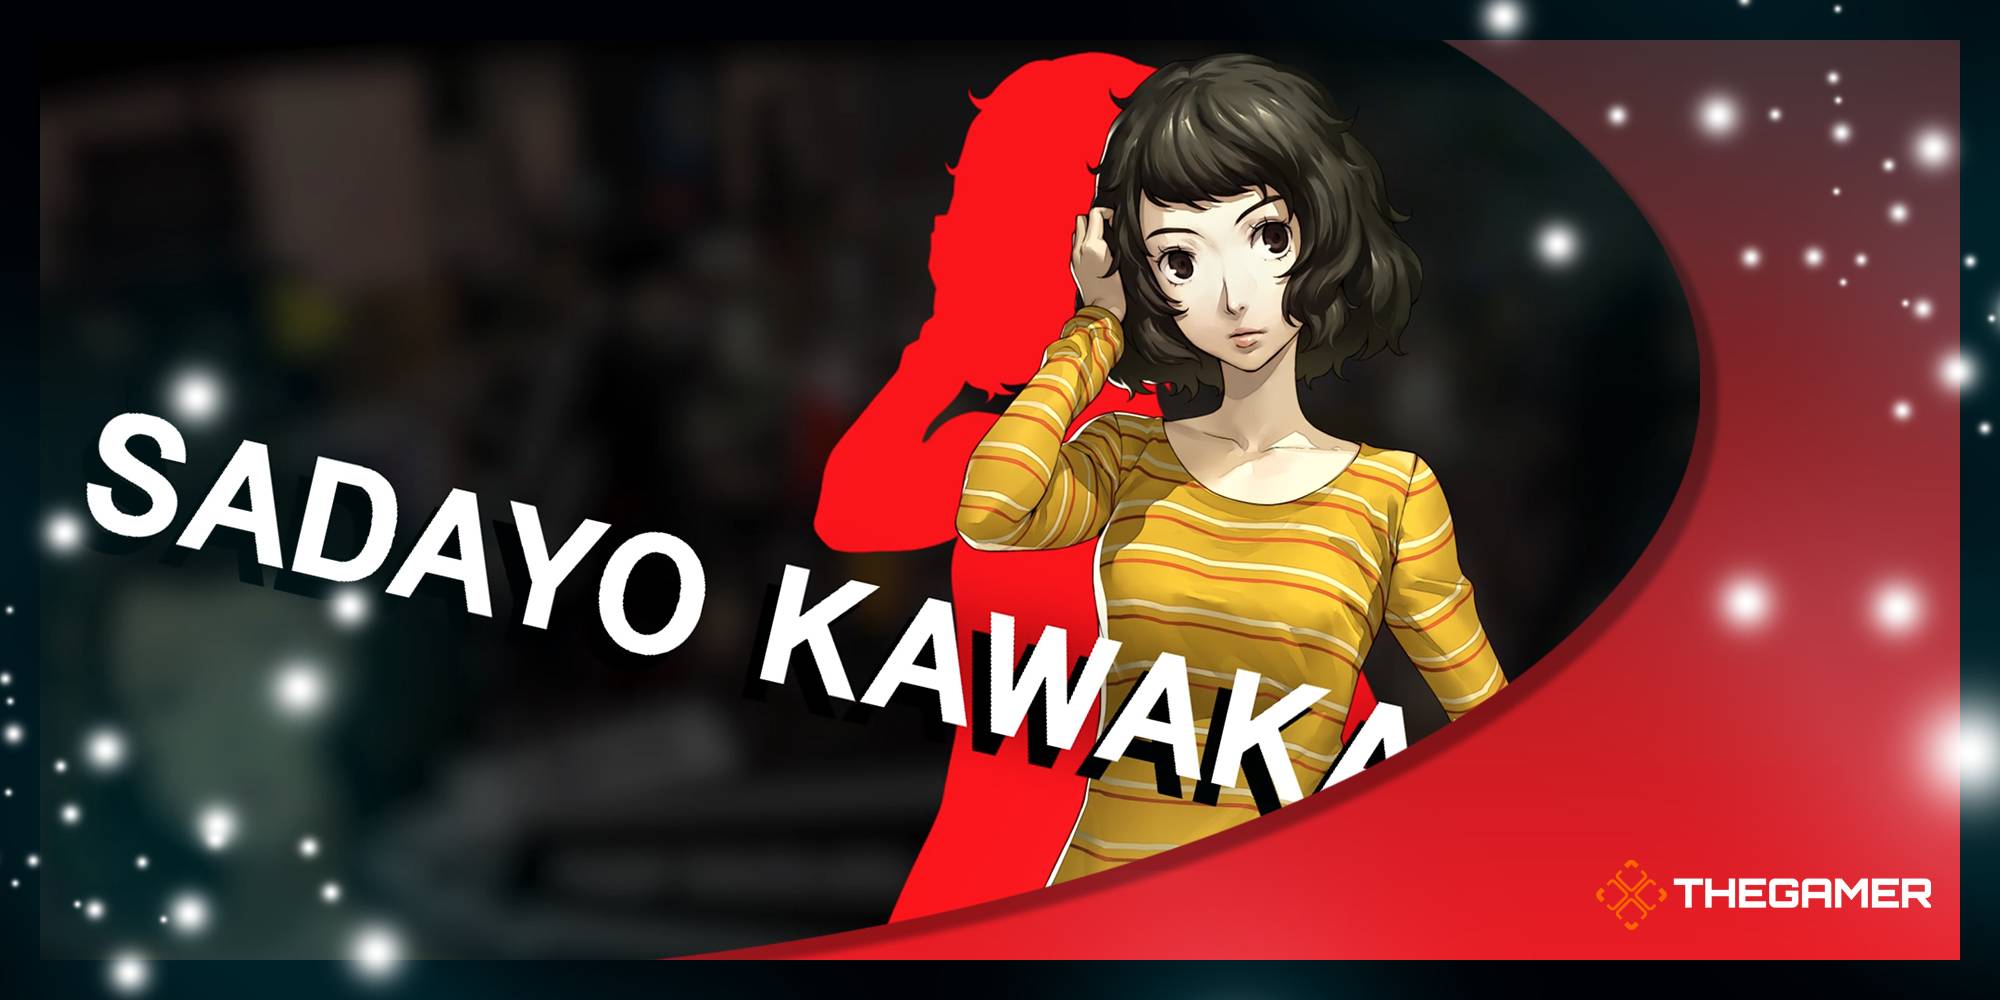 Persona 5 royal kawakami